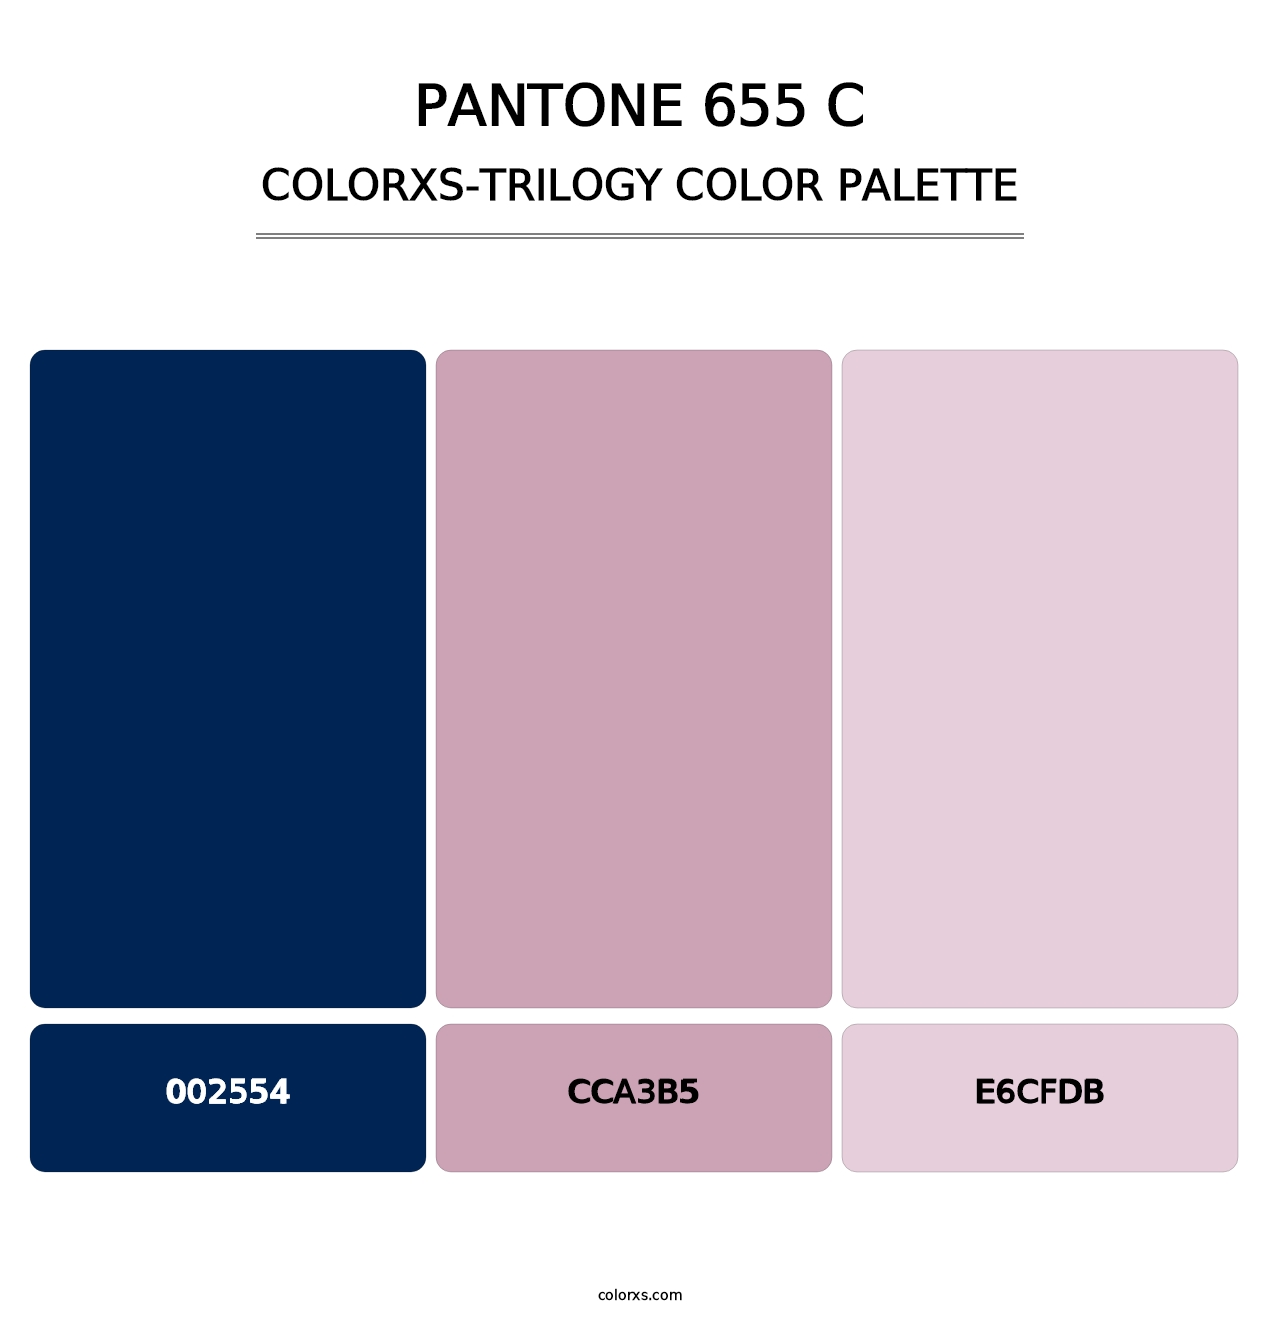 PANTONE 655 C - Colorxs Trilogy Palette